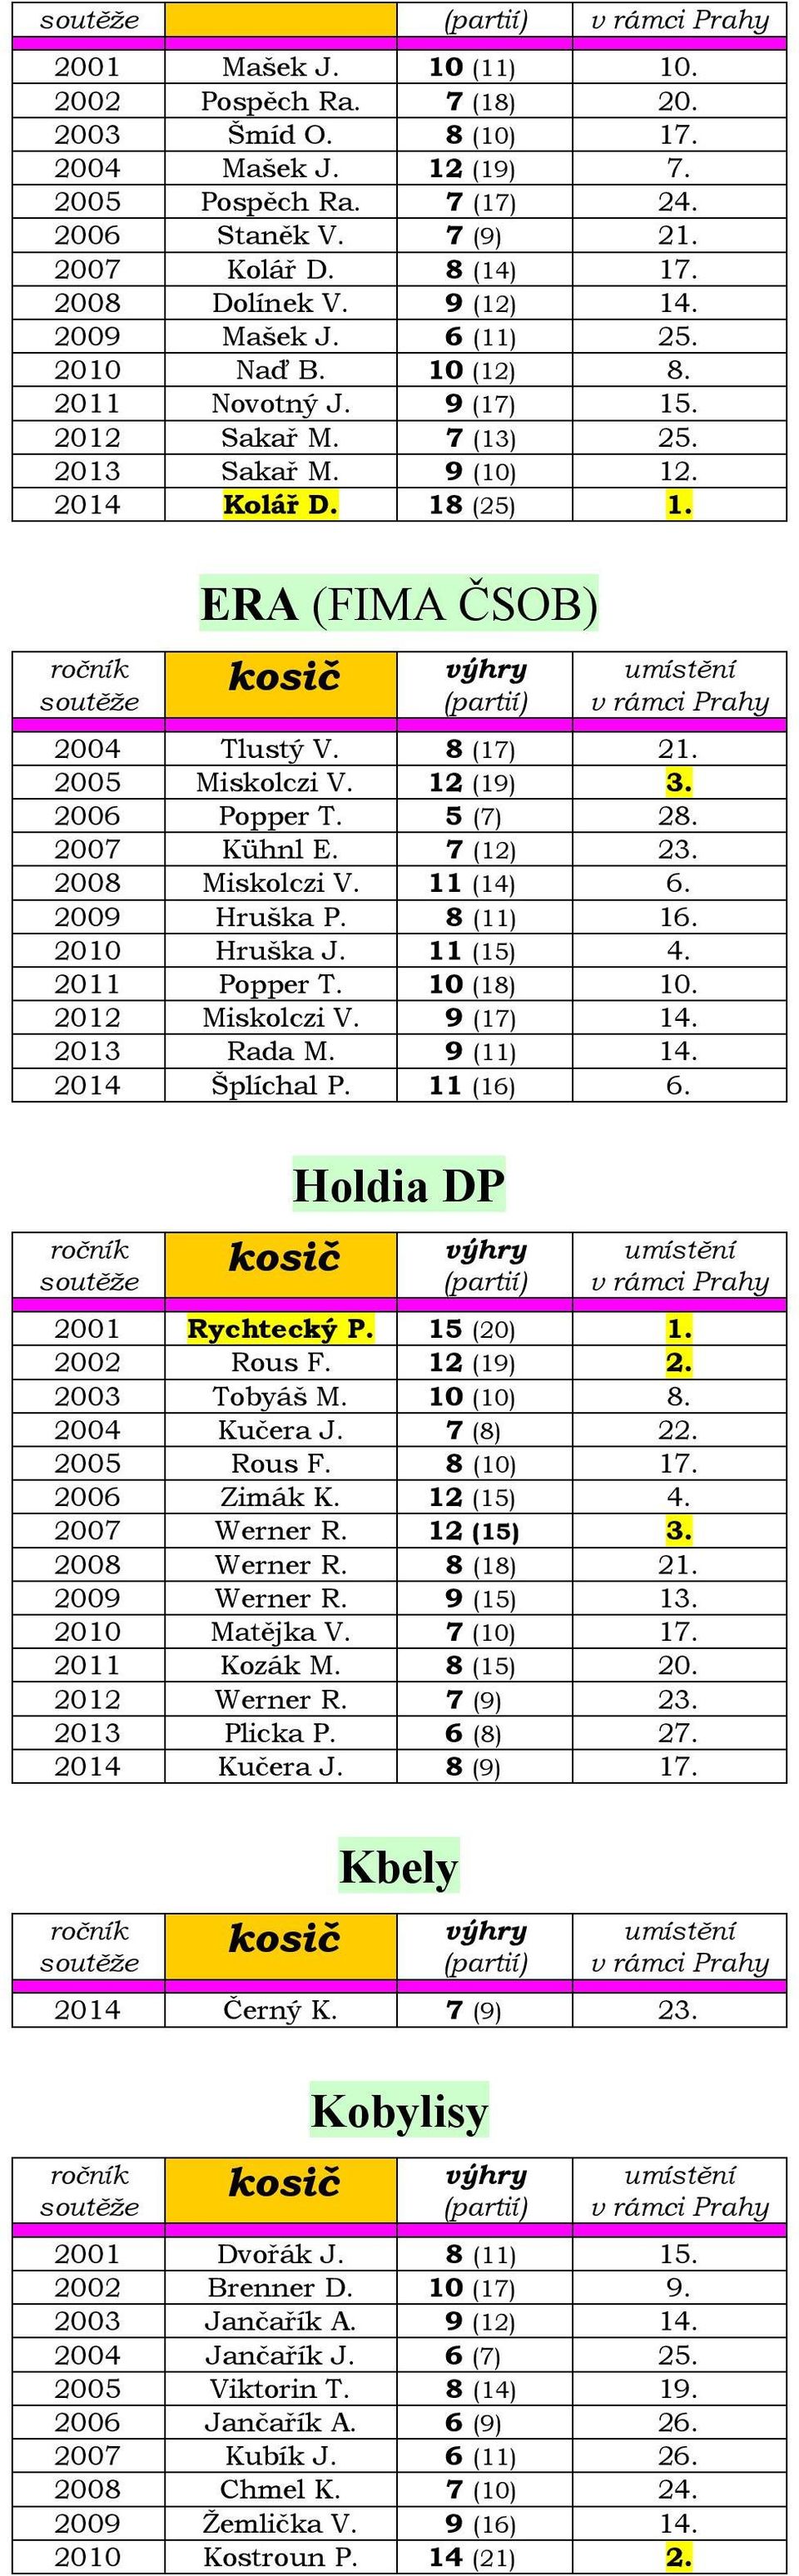 8 (17) 21. 2005 Miskolczi V. 12 (19) 3. 2006 Popper T. 5 (7) 28. 2007 Kühnl E. 7 (12) 23. 2008 Miskolczi V. 11 (14) 6. 2009 Hruška P. 8 (11) 16. 2010 Hruška J. 11 (15) 4. 2011 Popper T. 10 (18) 10.